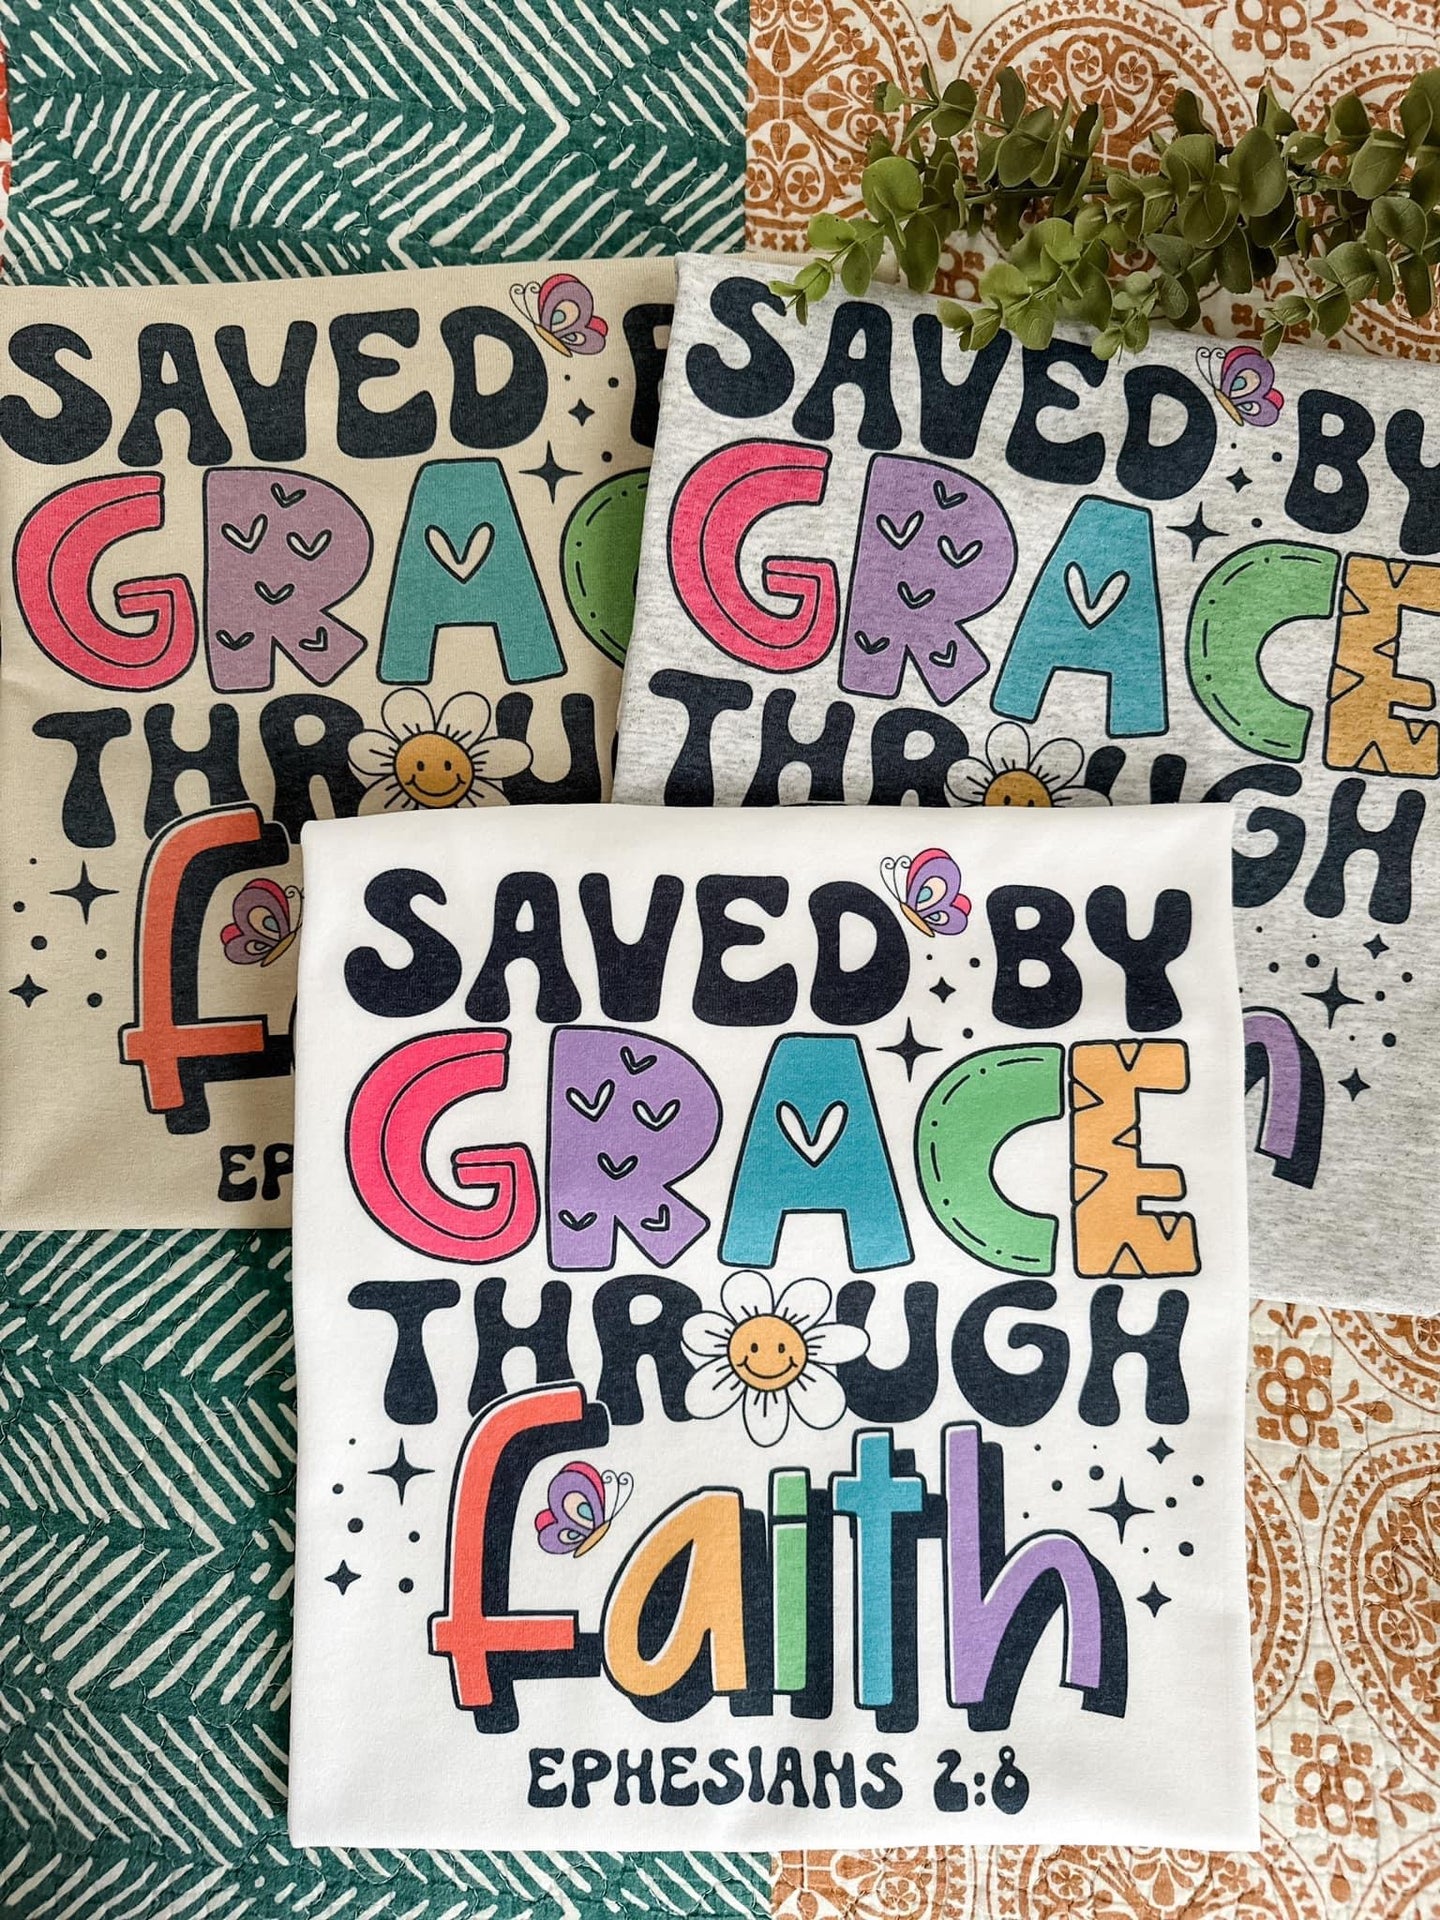 Saved by Grace through Faith- Ephesians 2:8